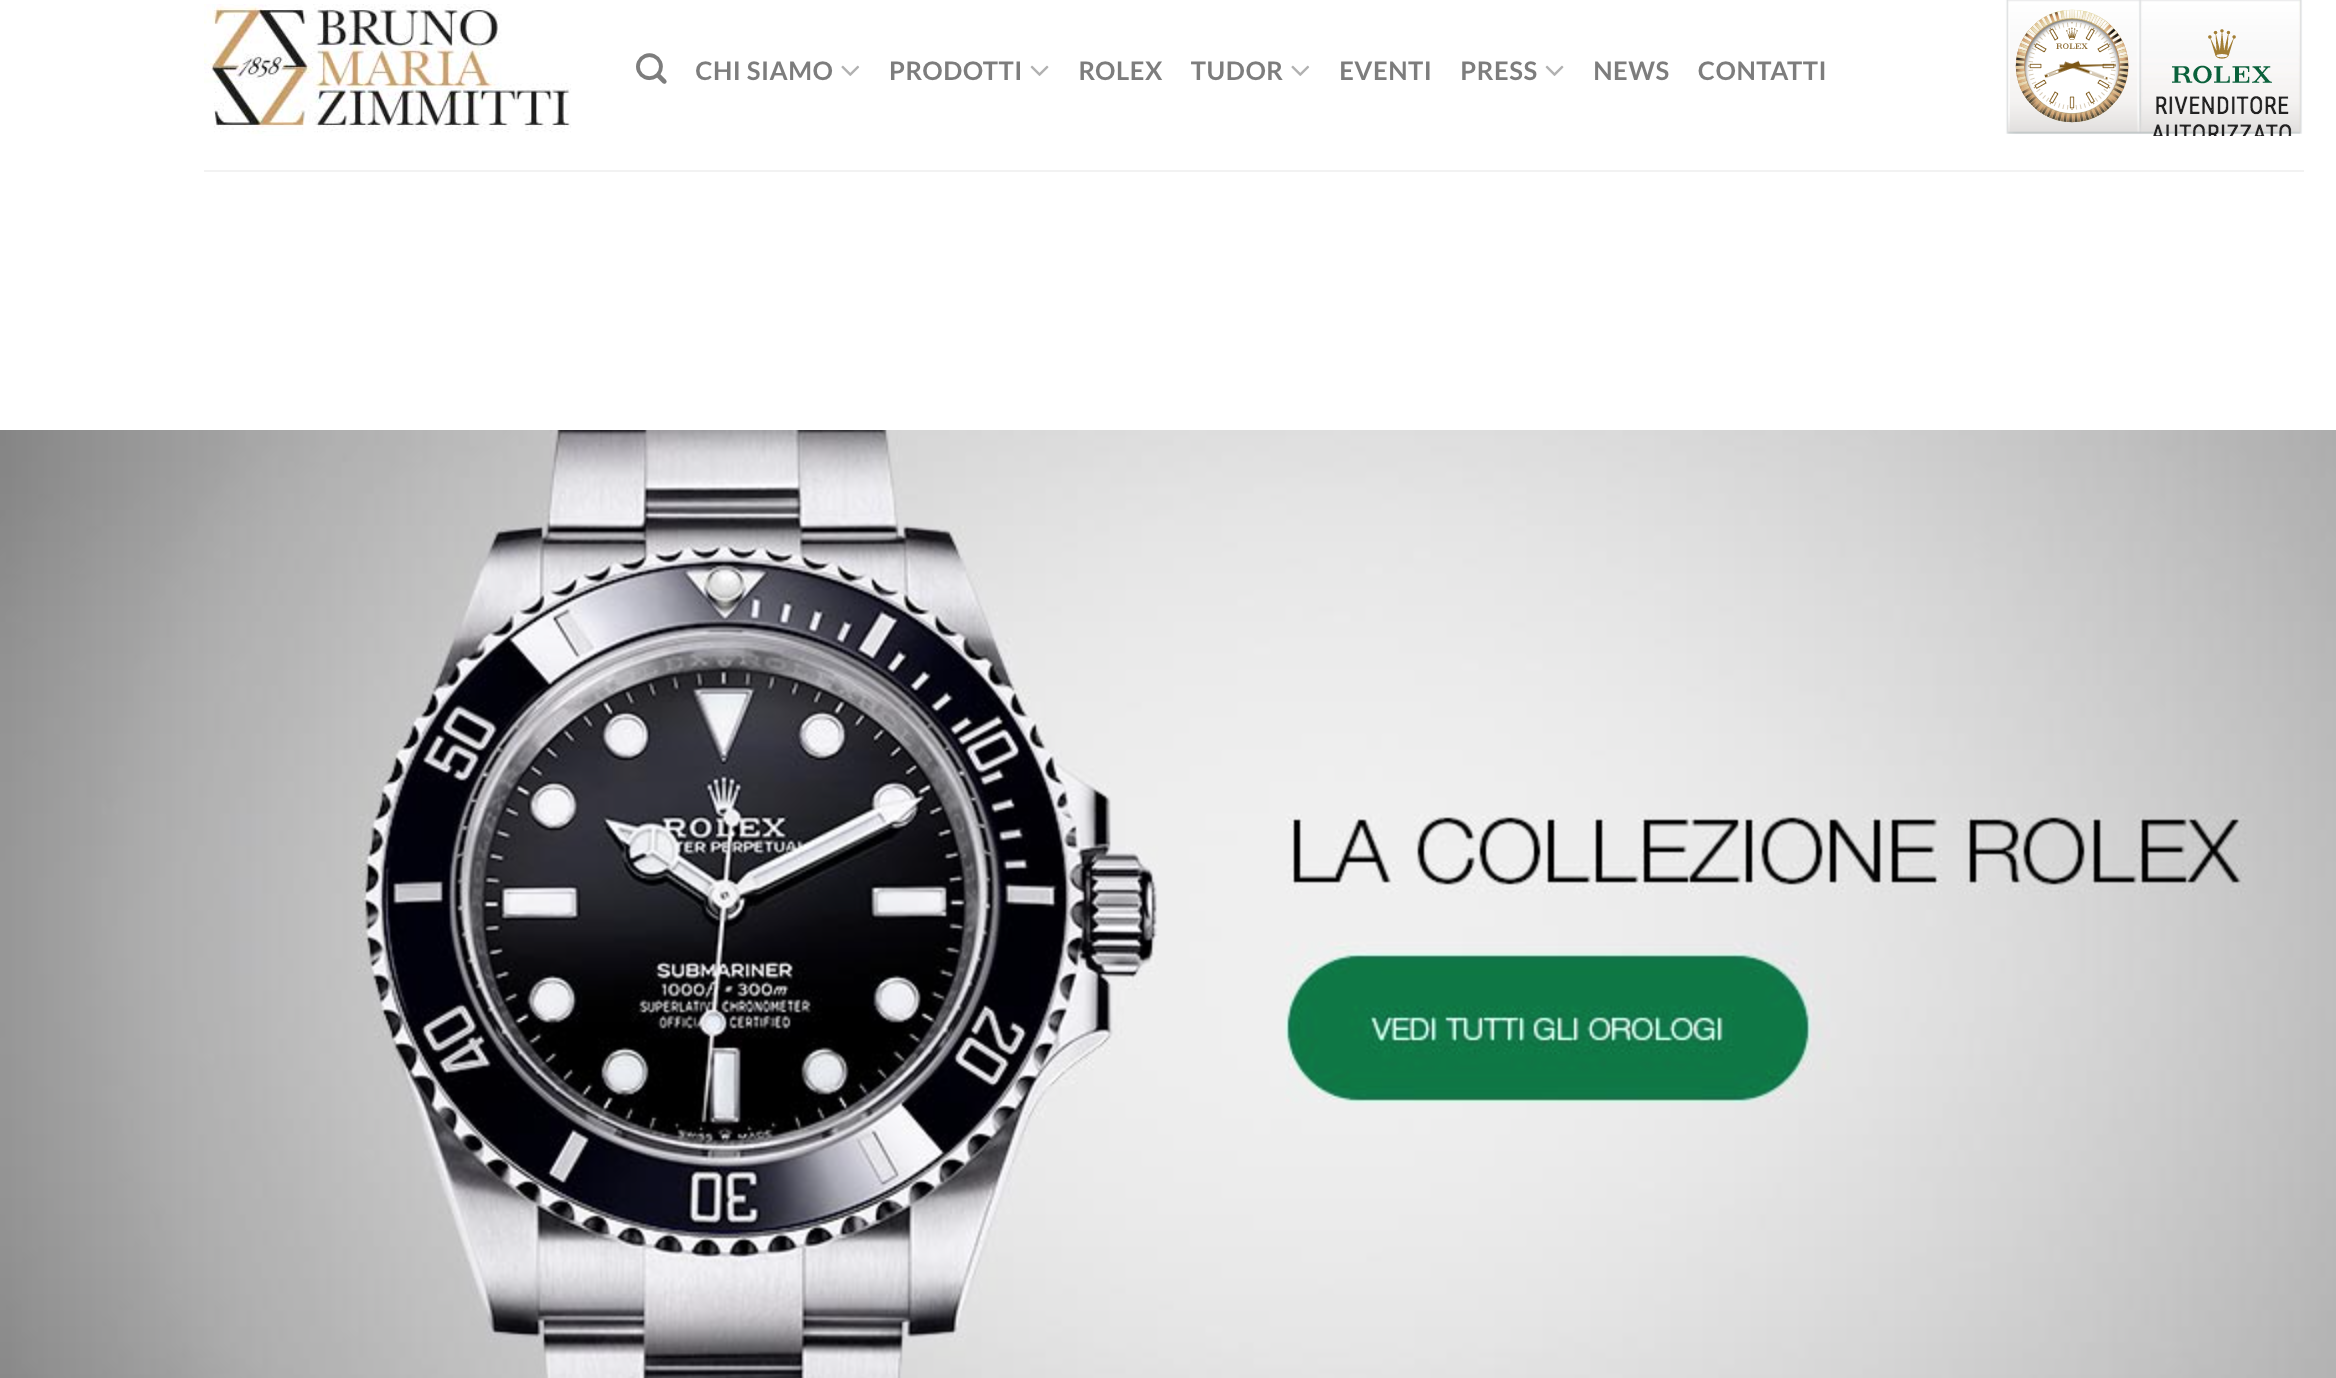 意大利高级珠宝集团 Damiani 收购珠宝零售商 Bruno Maria Zimmitti 1858多数股权